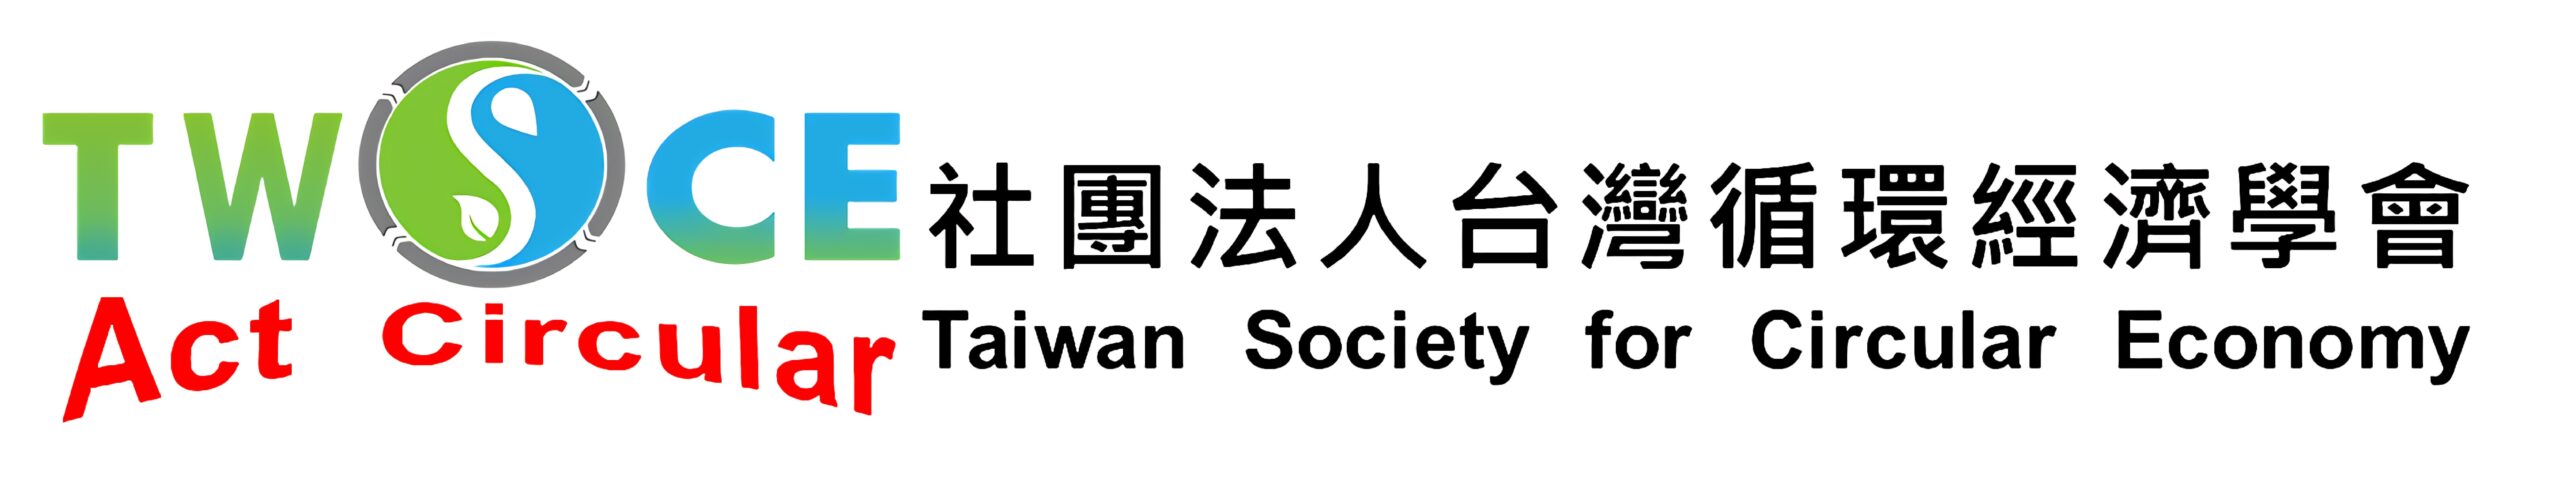 社團法人台灣循環經濟學會